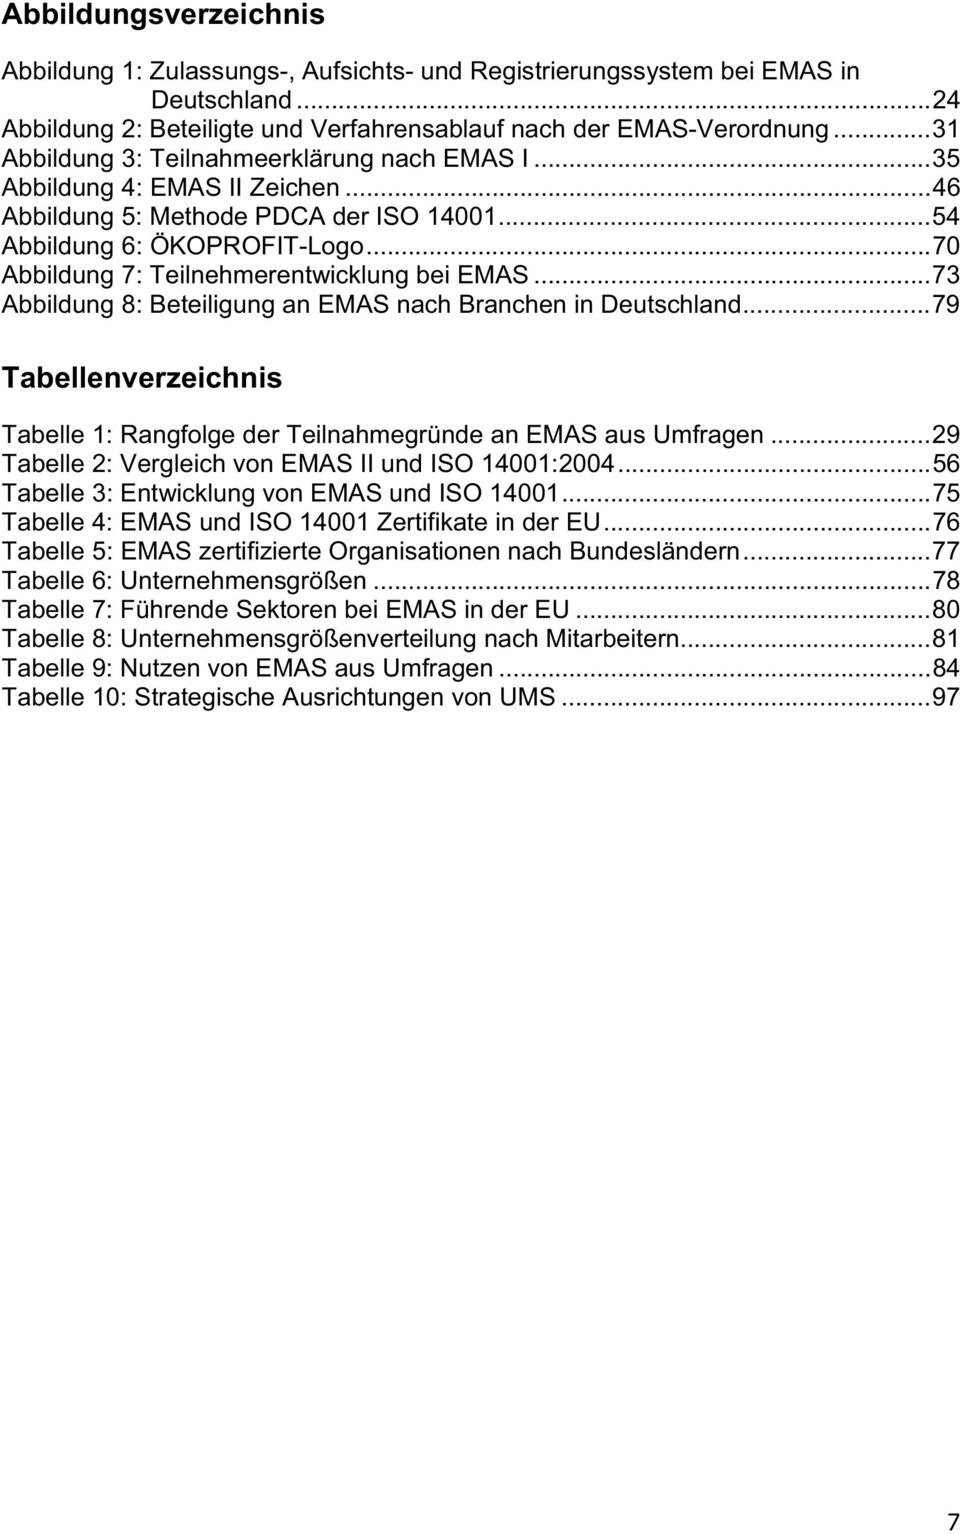 ..70 Abbildung 7: Teilnehmerentwicklung bei EMAS...73 Abbildung 8: Beteiligung an EMAS nach Branchen in Deutschland.